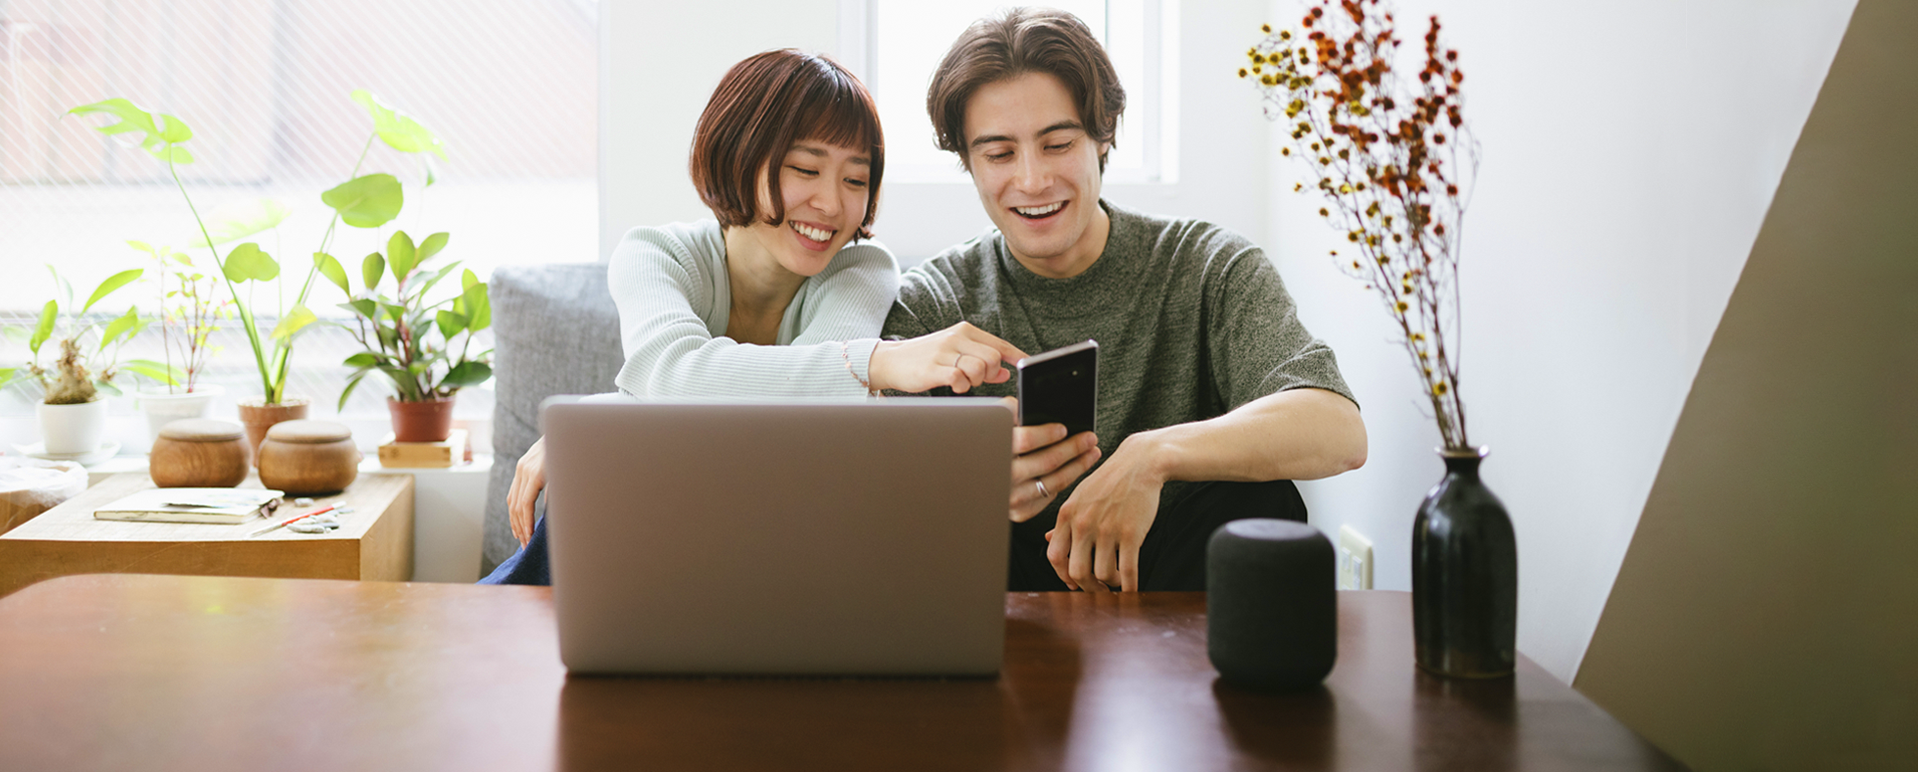 Dos personas frente a una computadora portátil, viendo un teléfono móvil y sonriendo. 